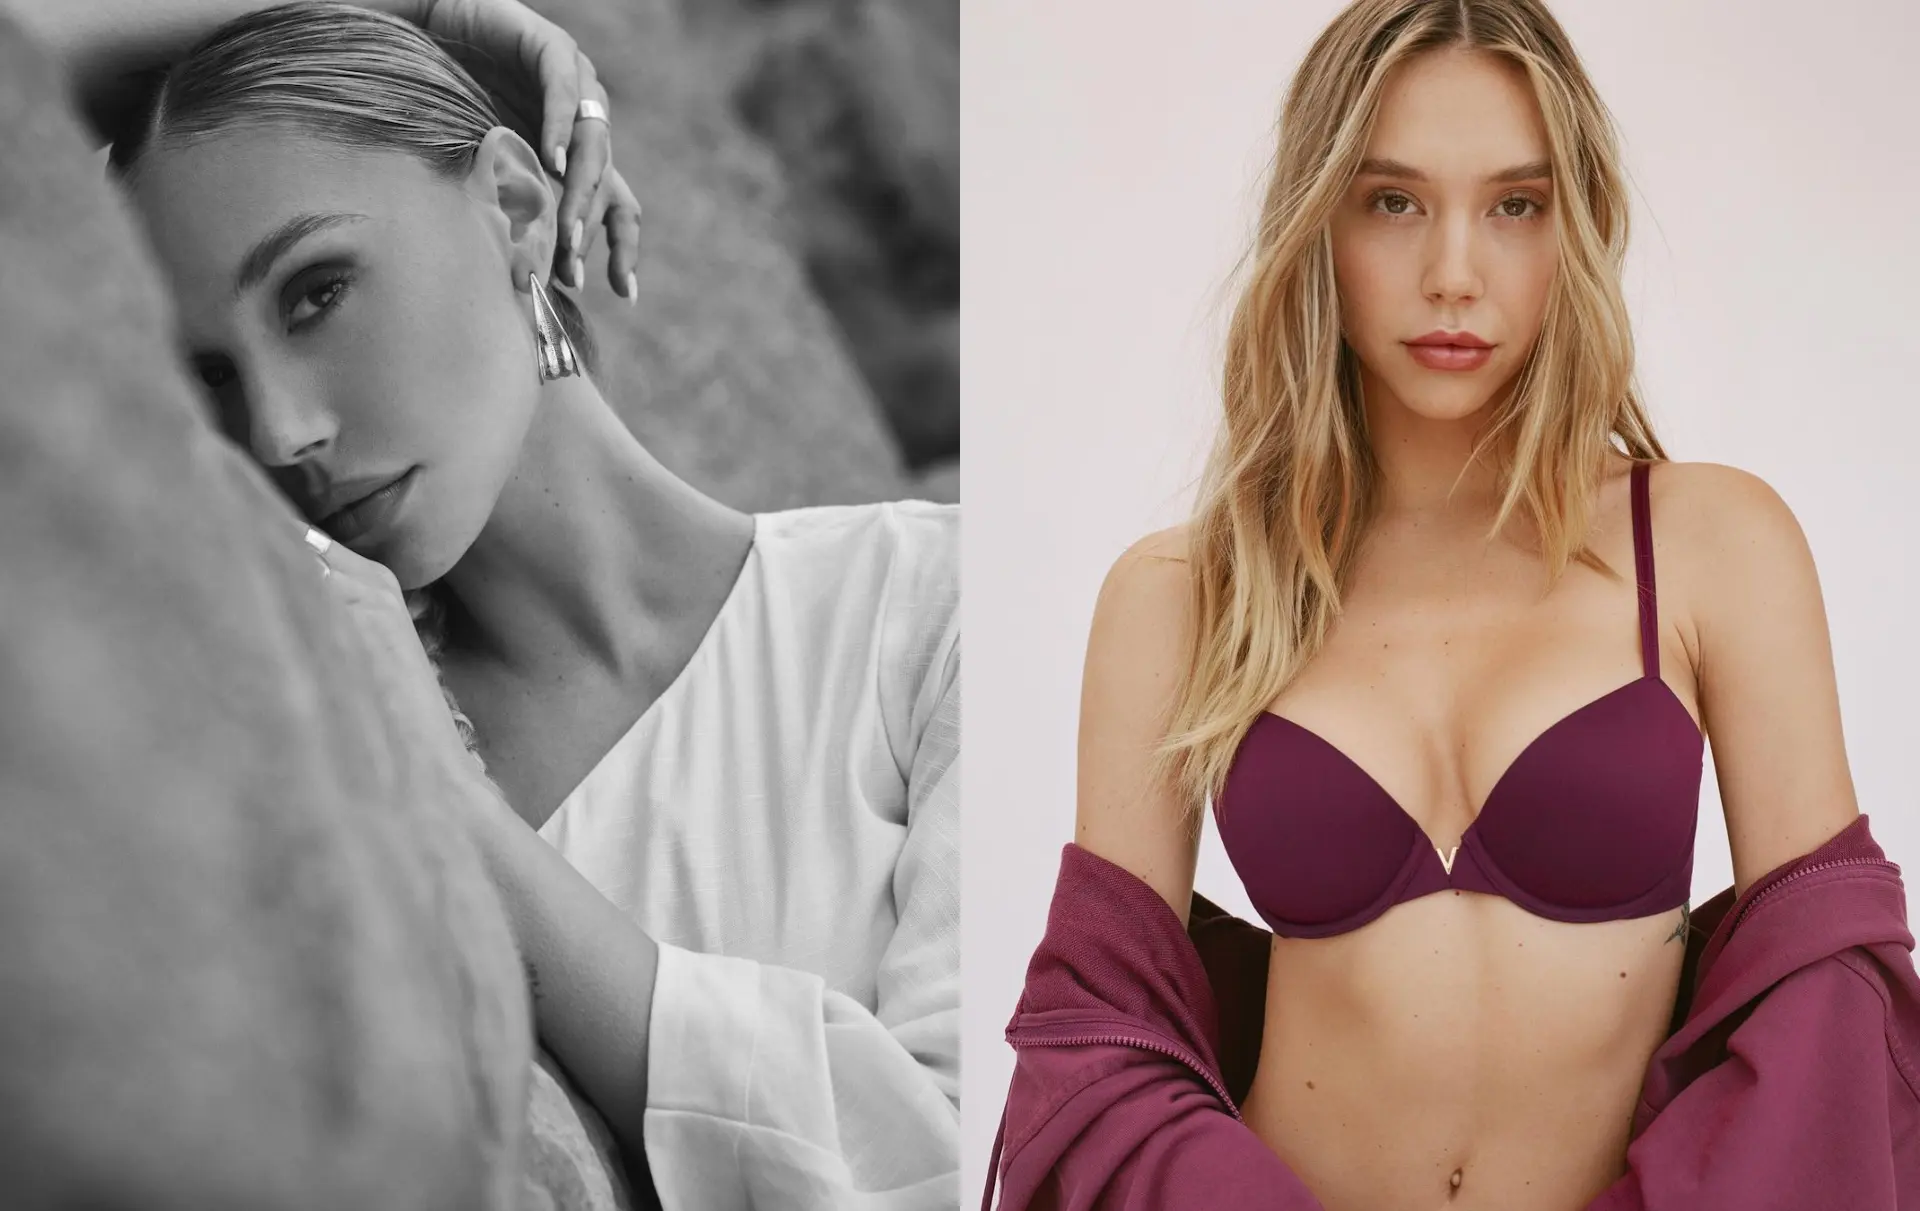 ¿Quién es Alexis Ren, una de las modelos más seguidas en Instagram?